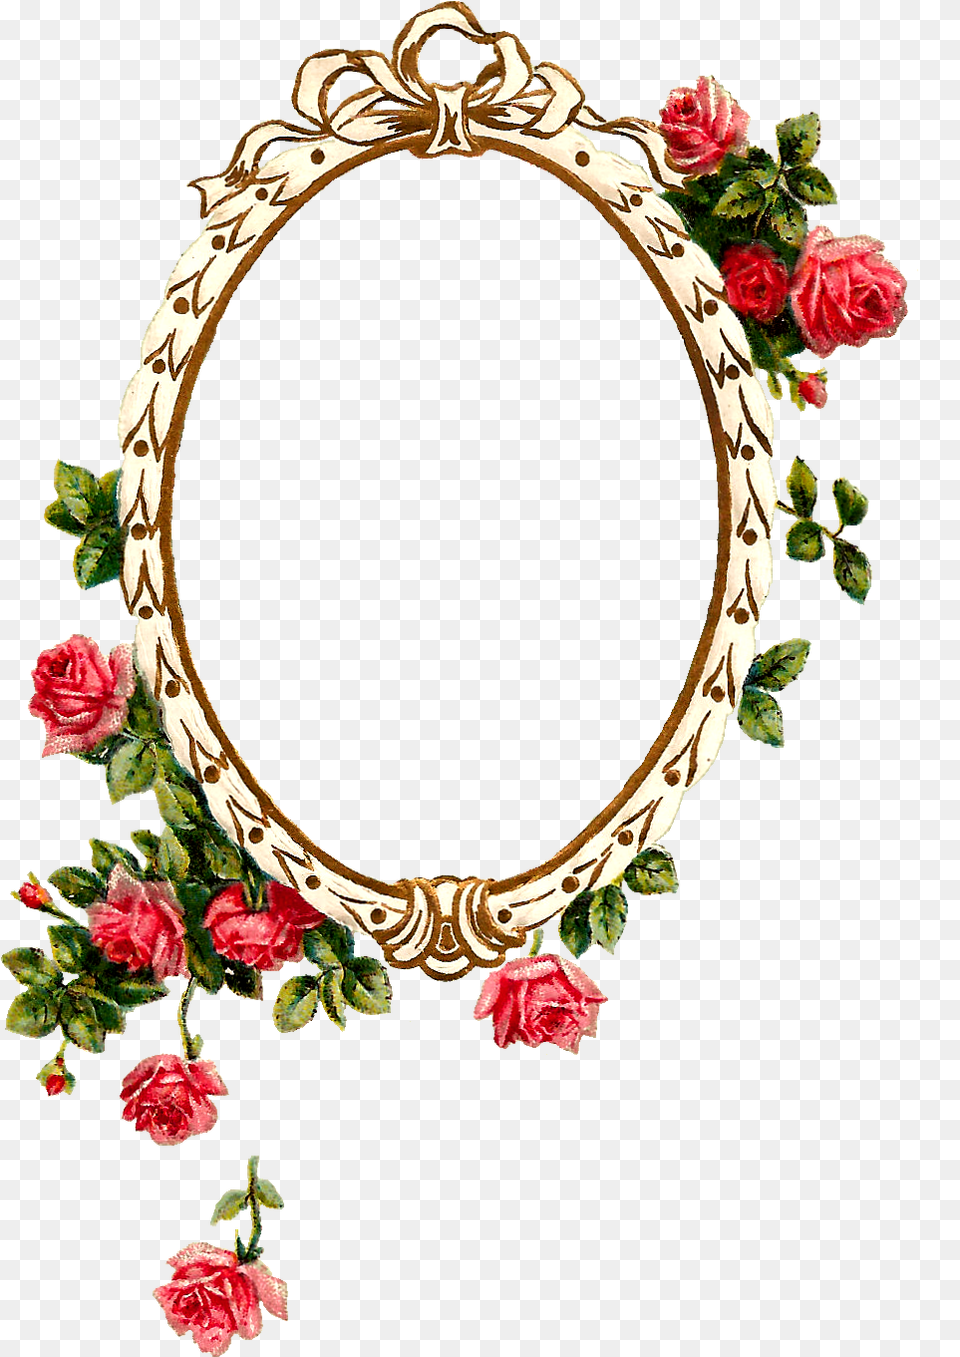 Transparent Oval Frame Oval Flower Frame, Plant, Rose, Accessories Png Image